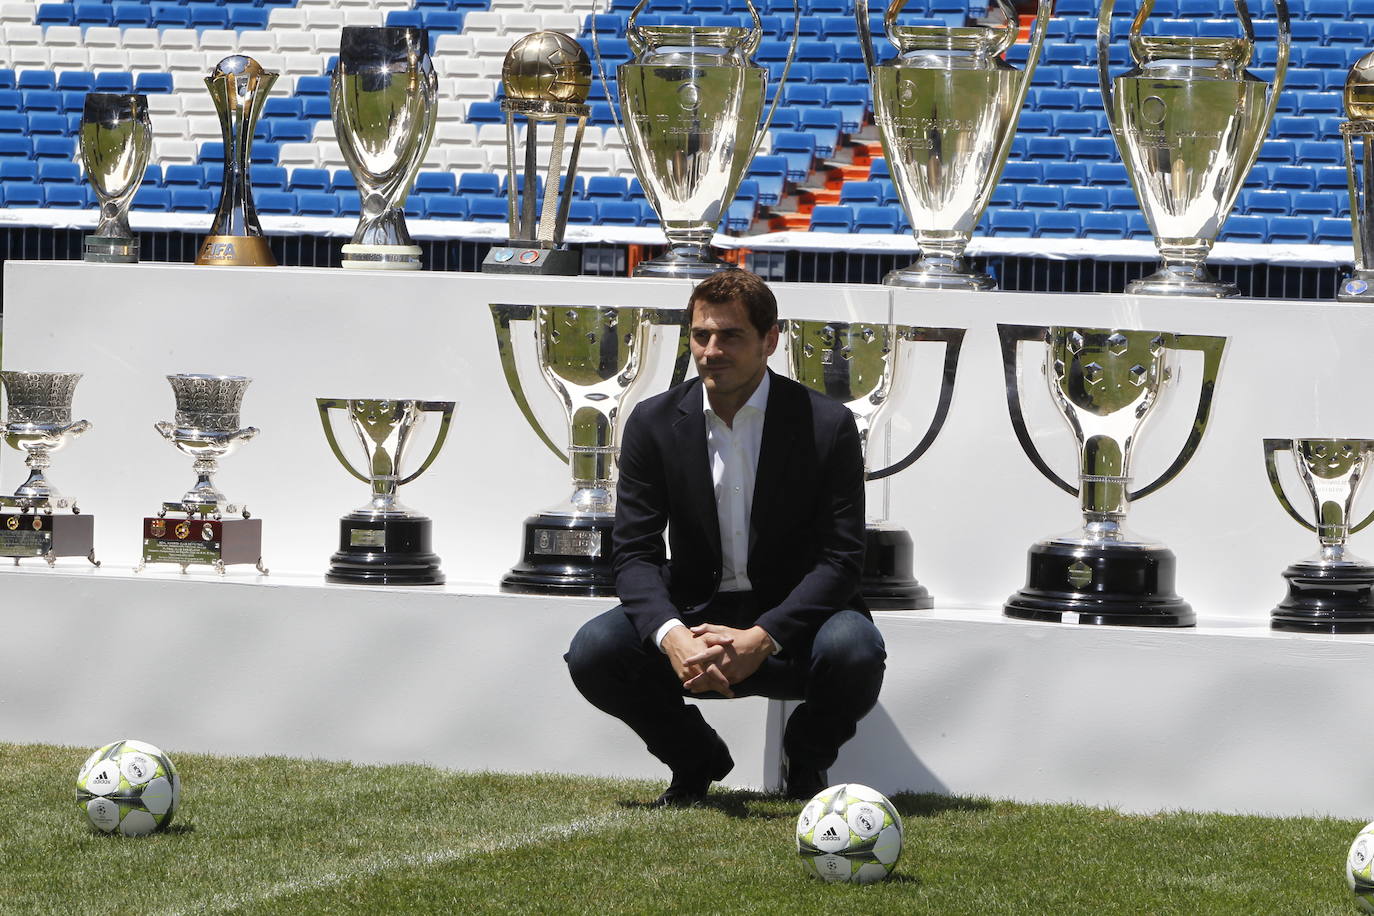 Fotos: Iker Casillas, un portero de leyenda